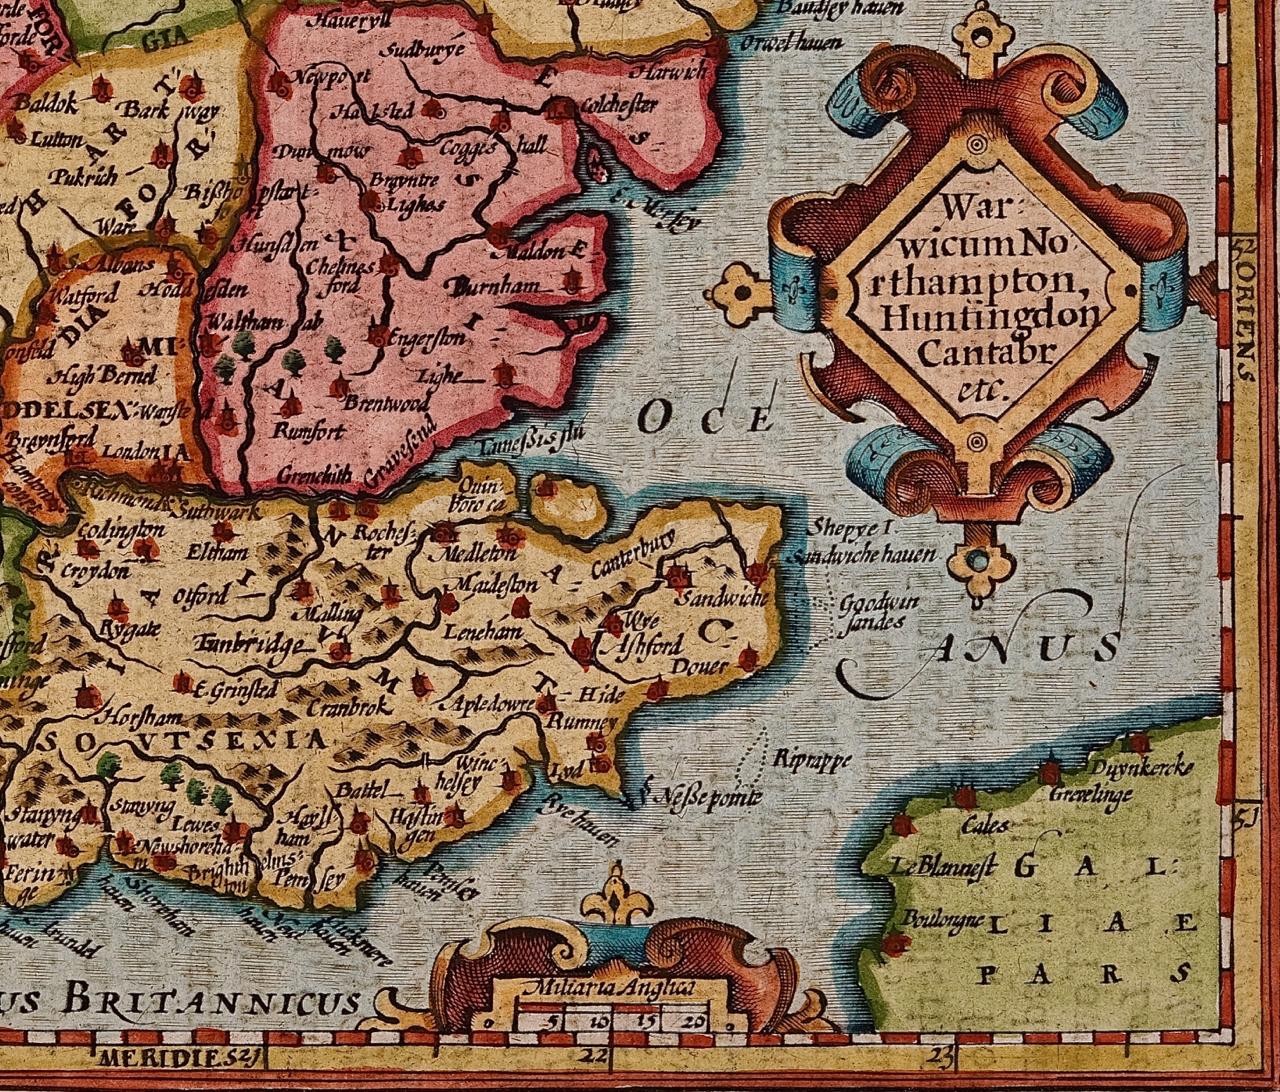 16th century mercator map